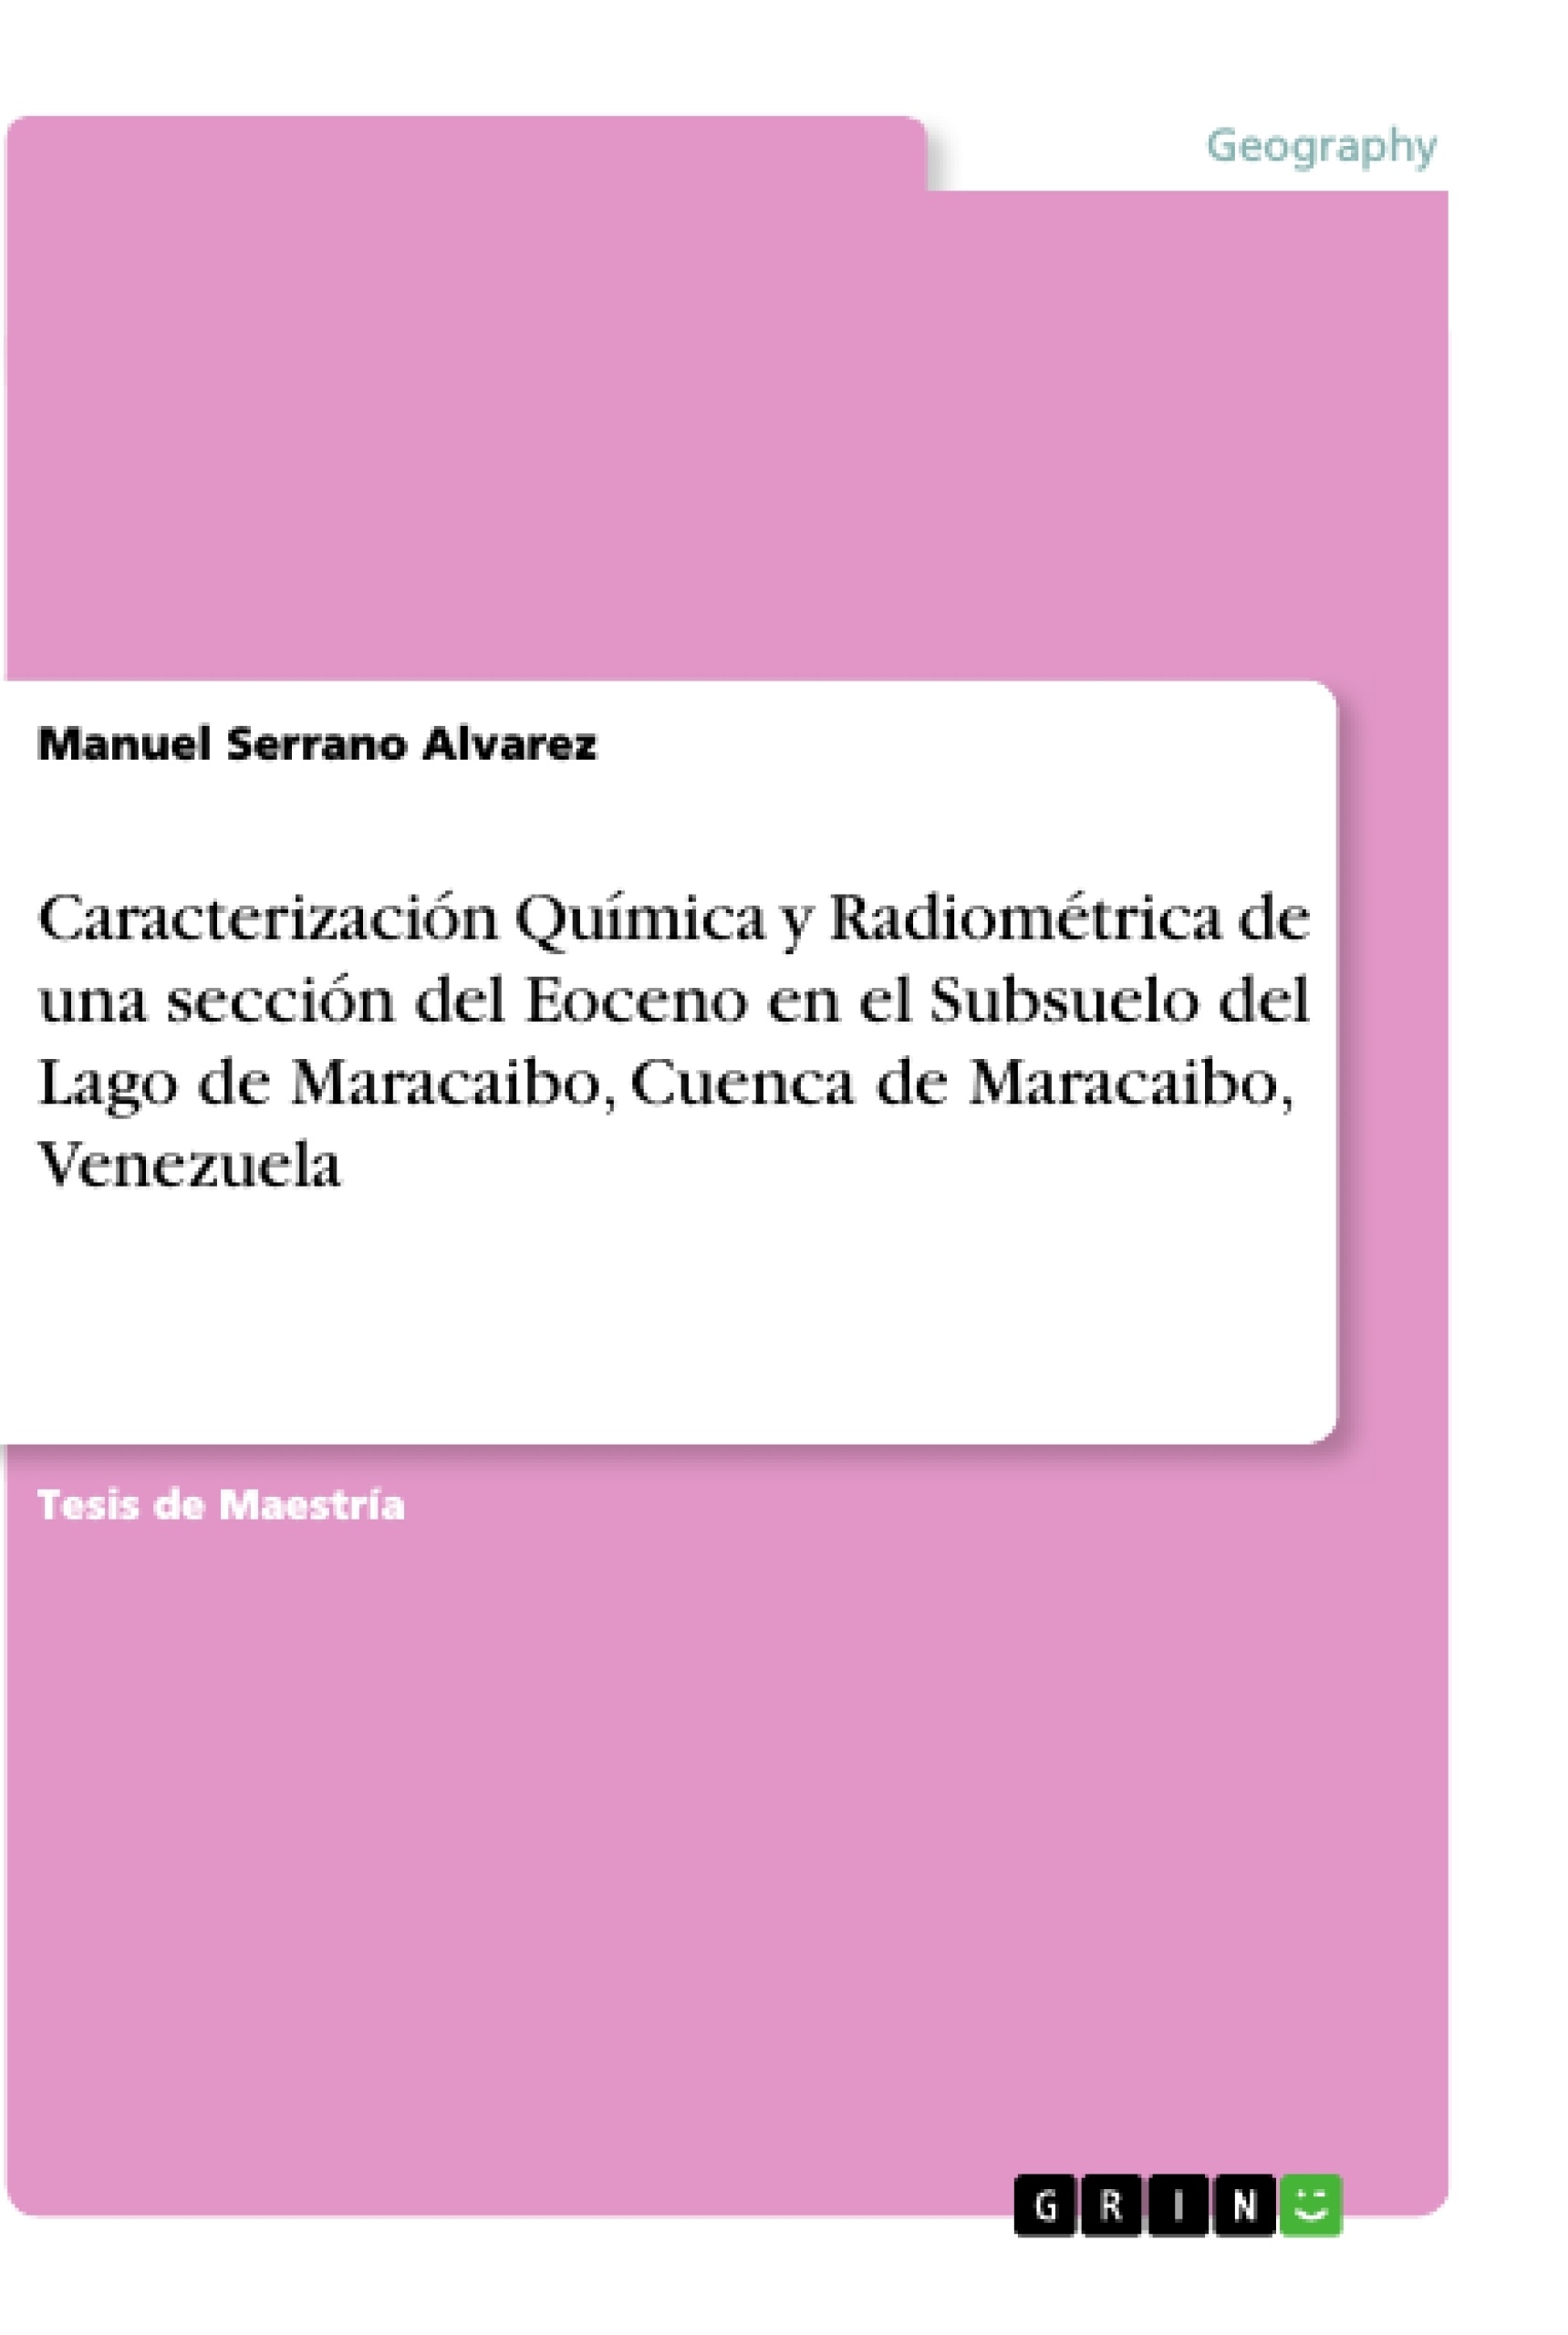 Titre: Caracterización Química y Radiométrica de una sección del Eoceno en el Subsuelo del Lago de Maracaibo, Cuenca de Maracaibo, Venezuela